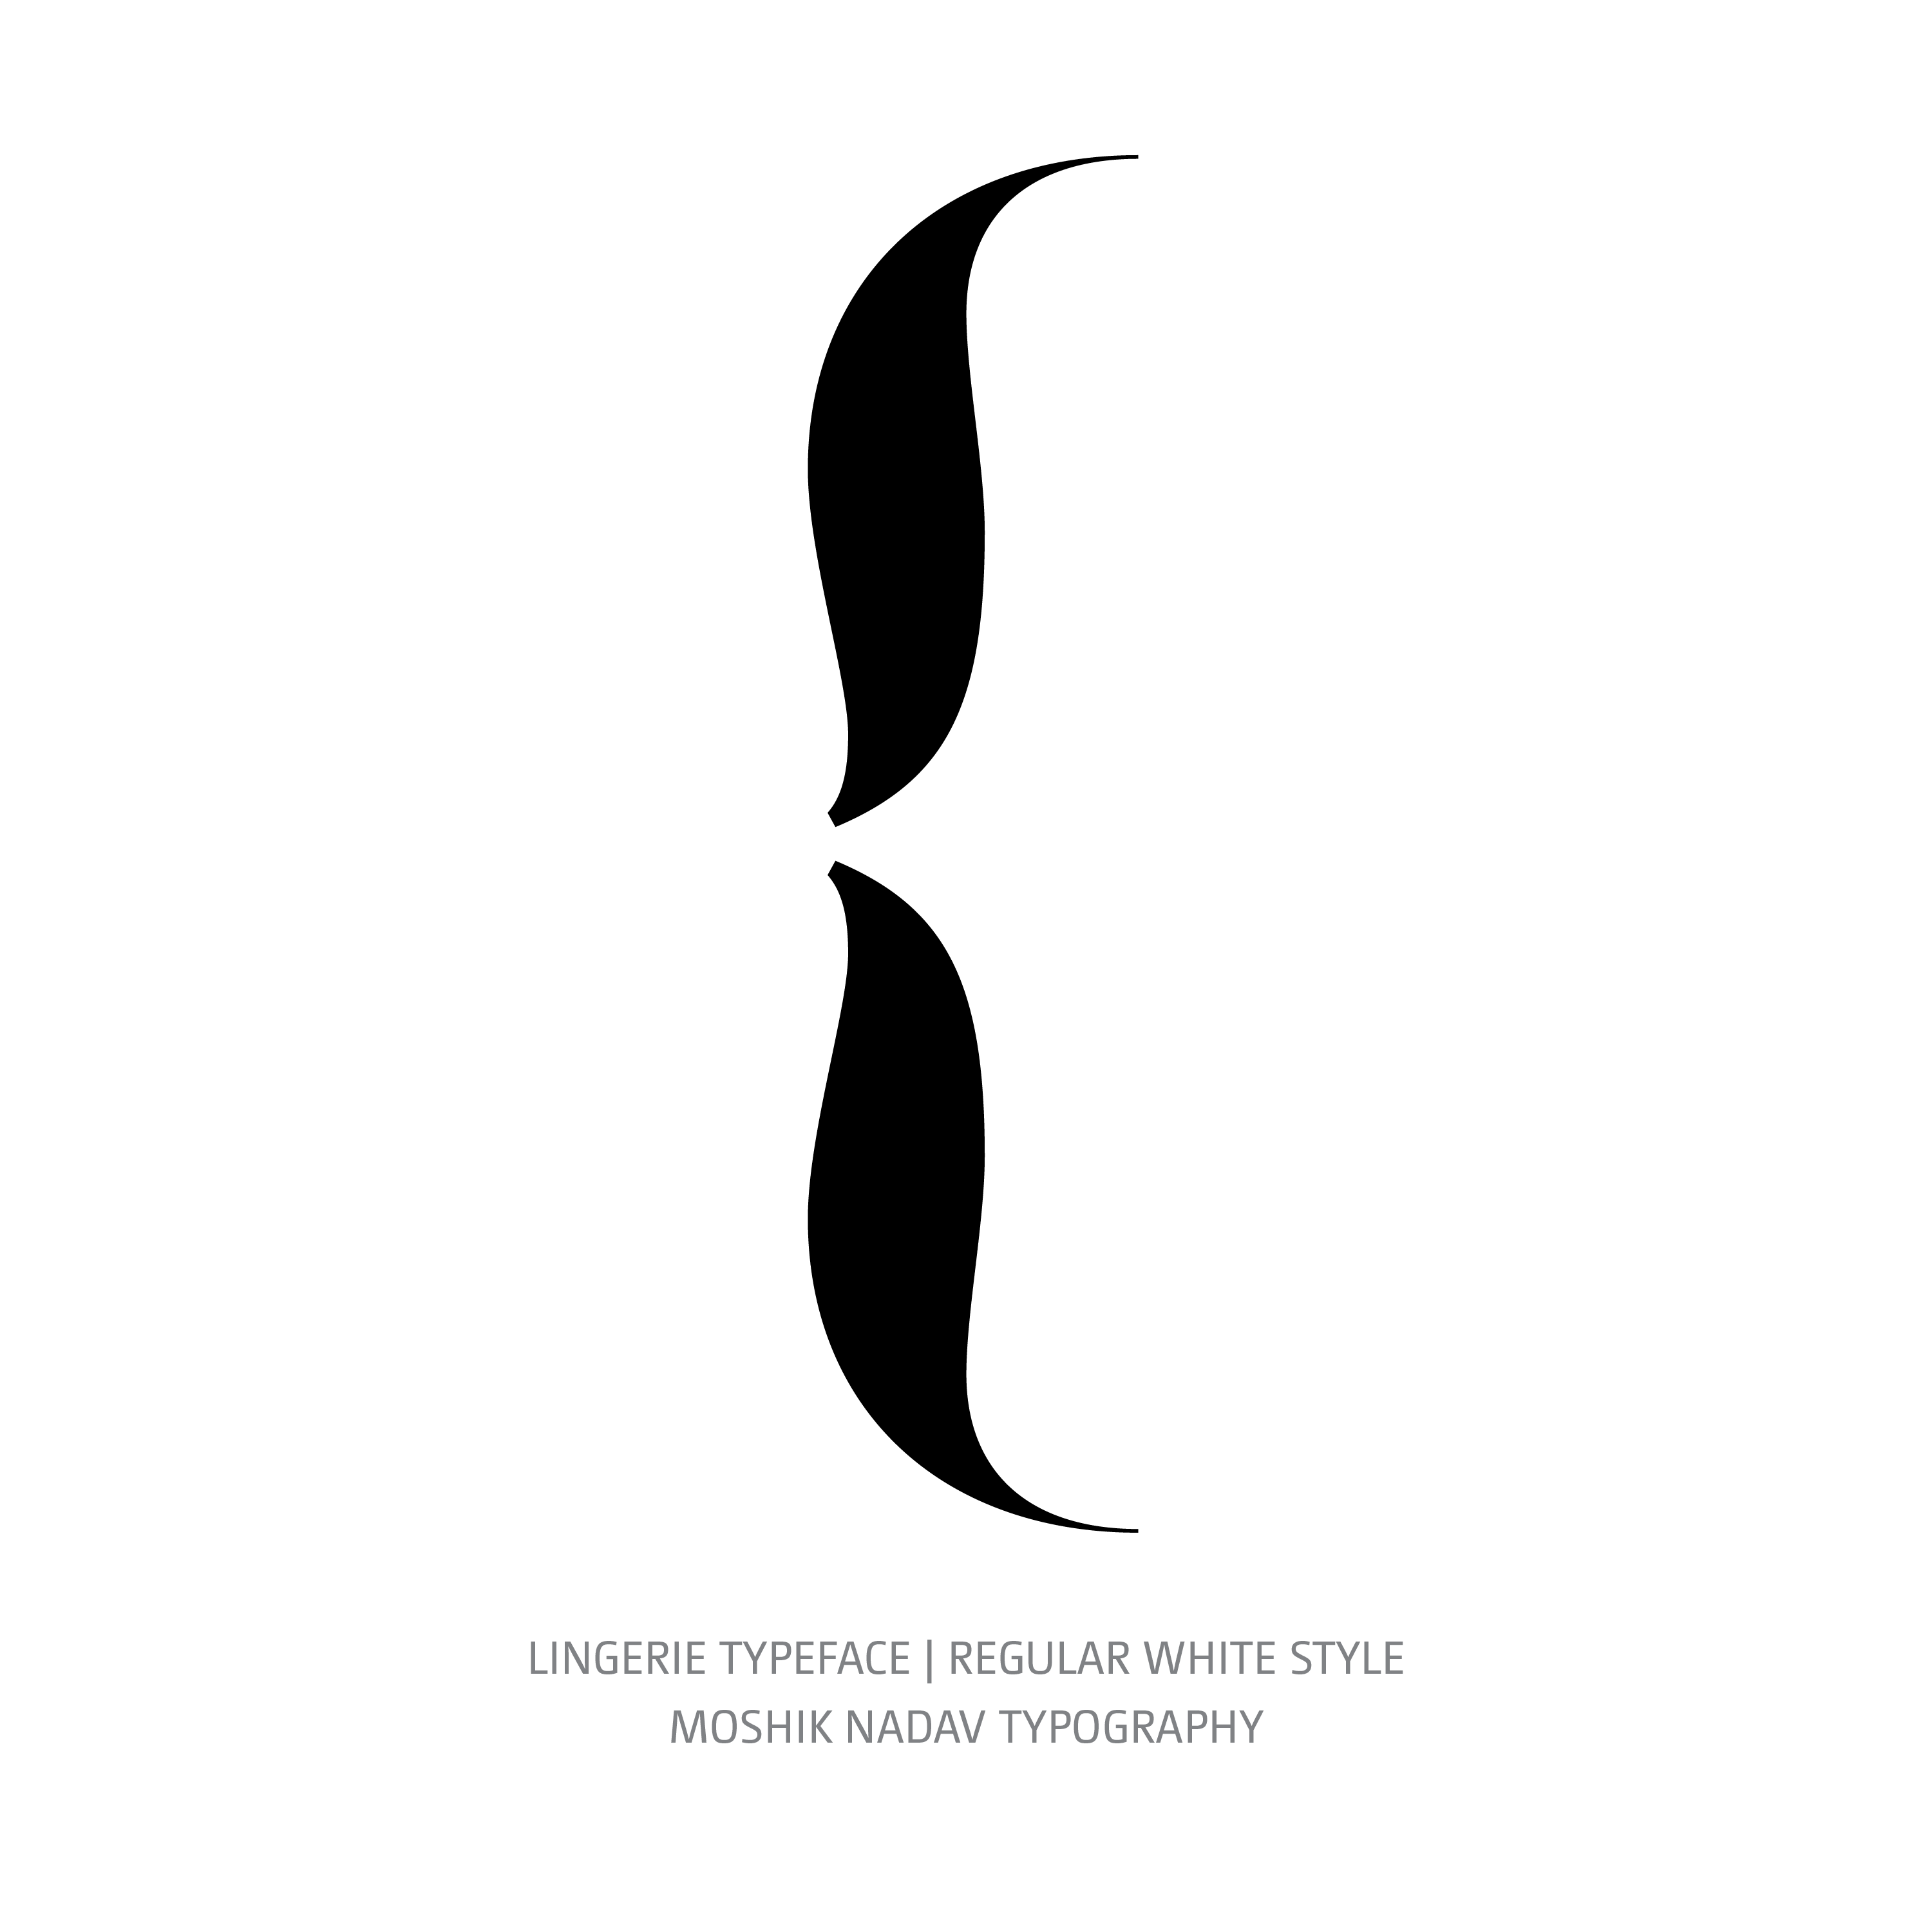 Lingerie Typeface Regular White glyph